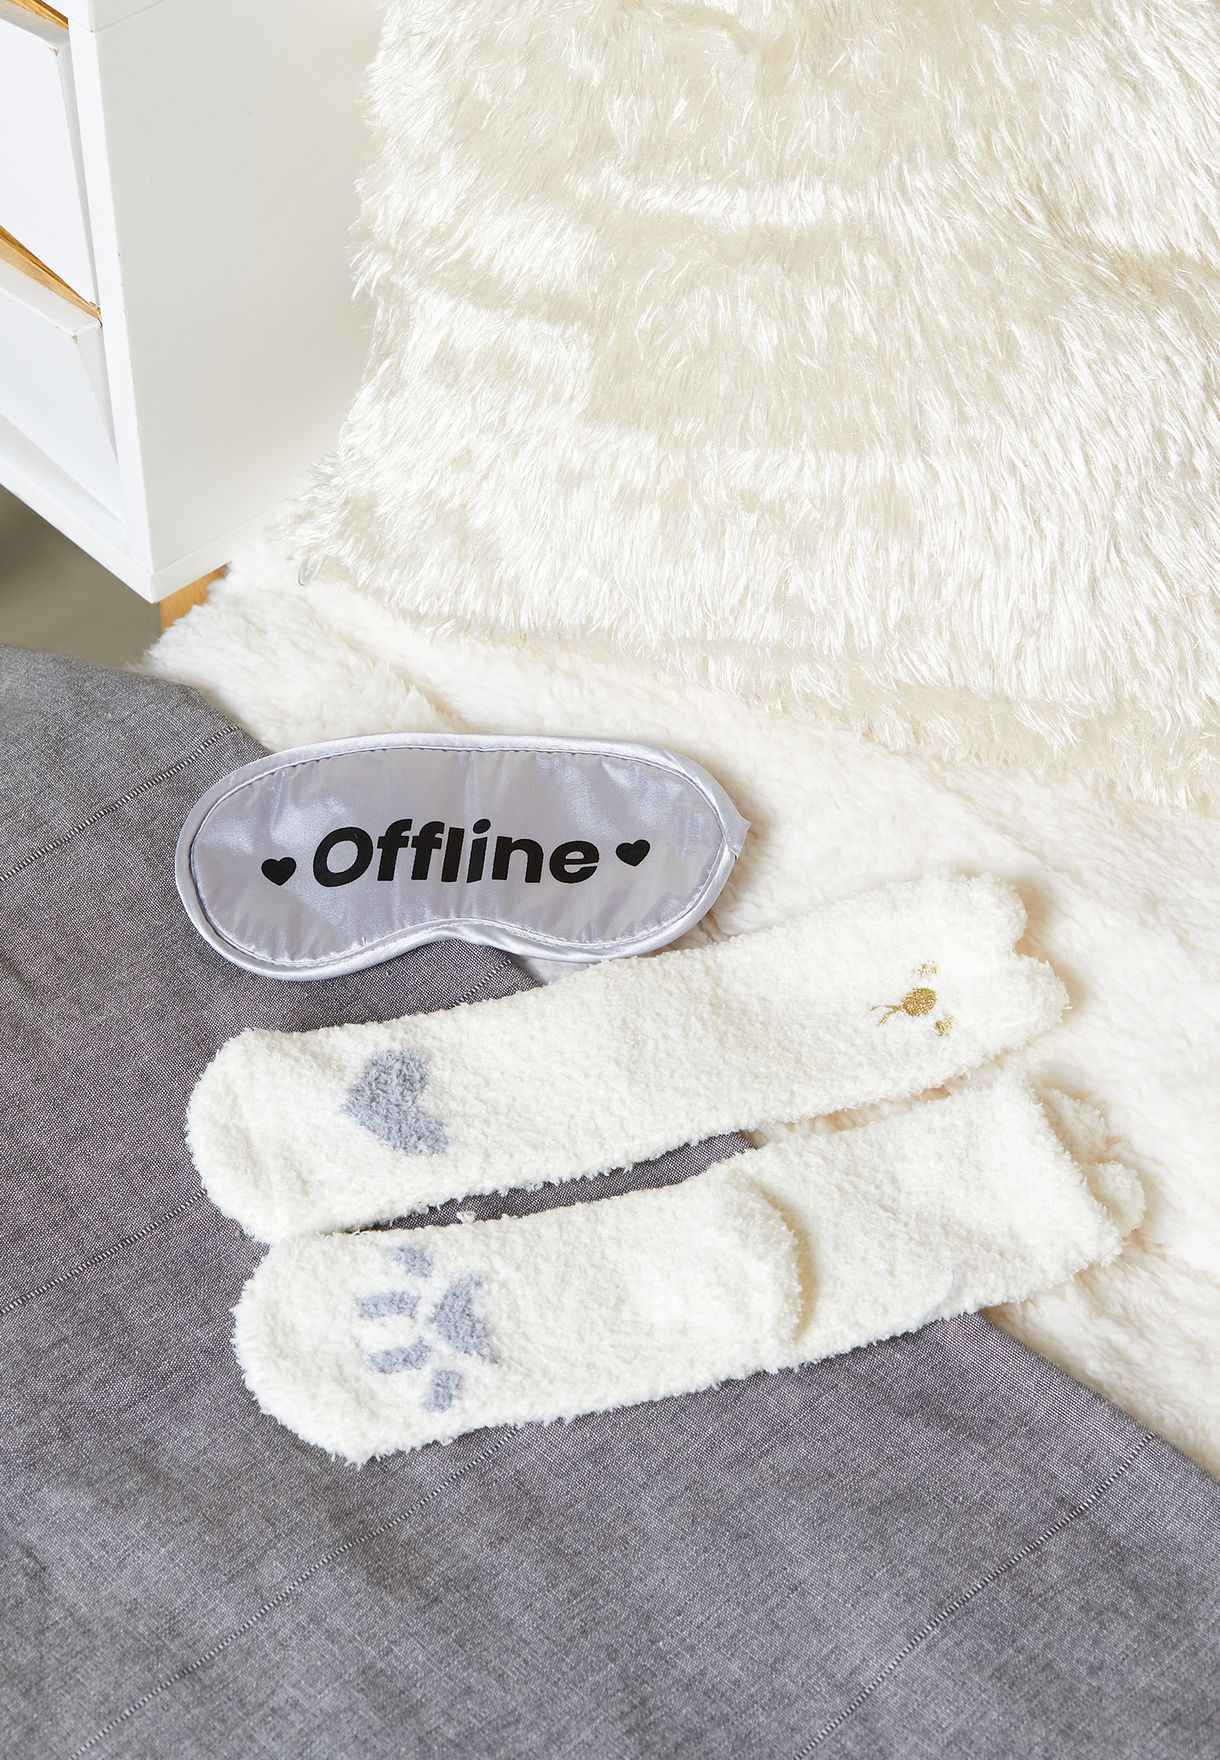 Offline Slogan Face Mask And Socks Set 